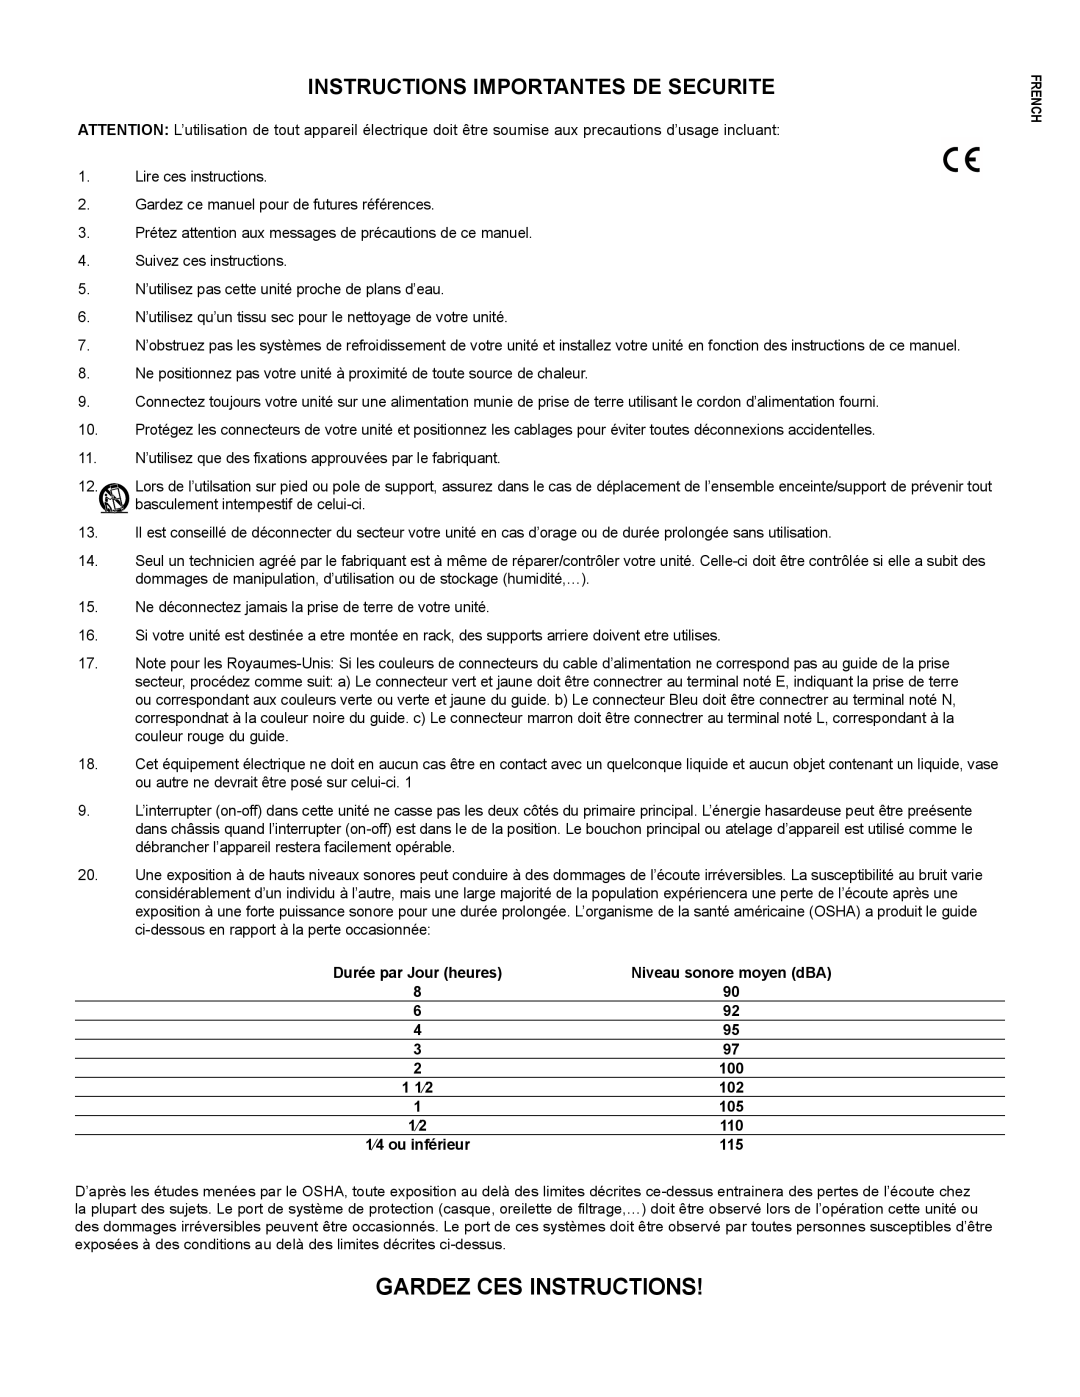 Peavey PV215EQ manual Gardez Ces Instructions, Instructions Importantes De Securite, Niveau sonore moyen dBA, 1 1⁄2, French 